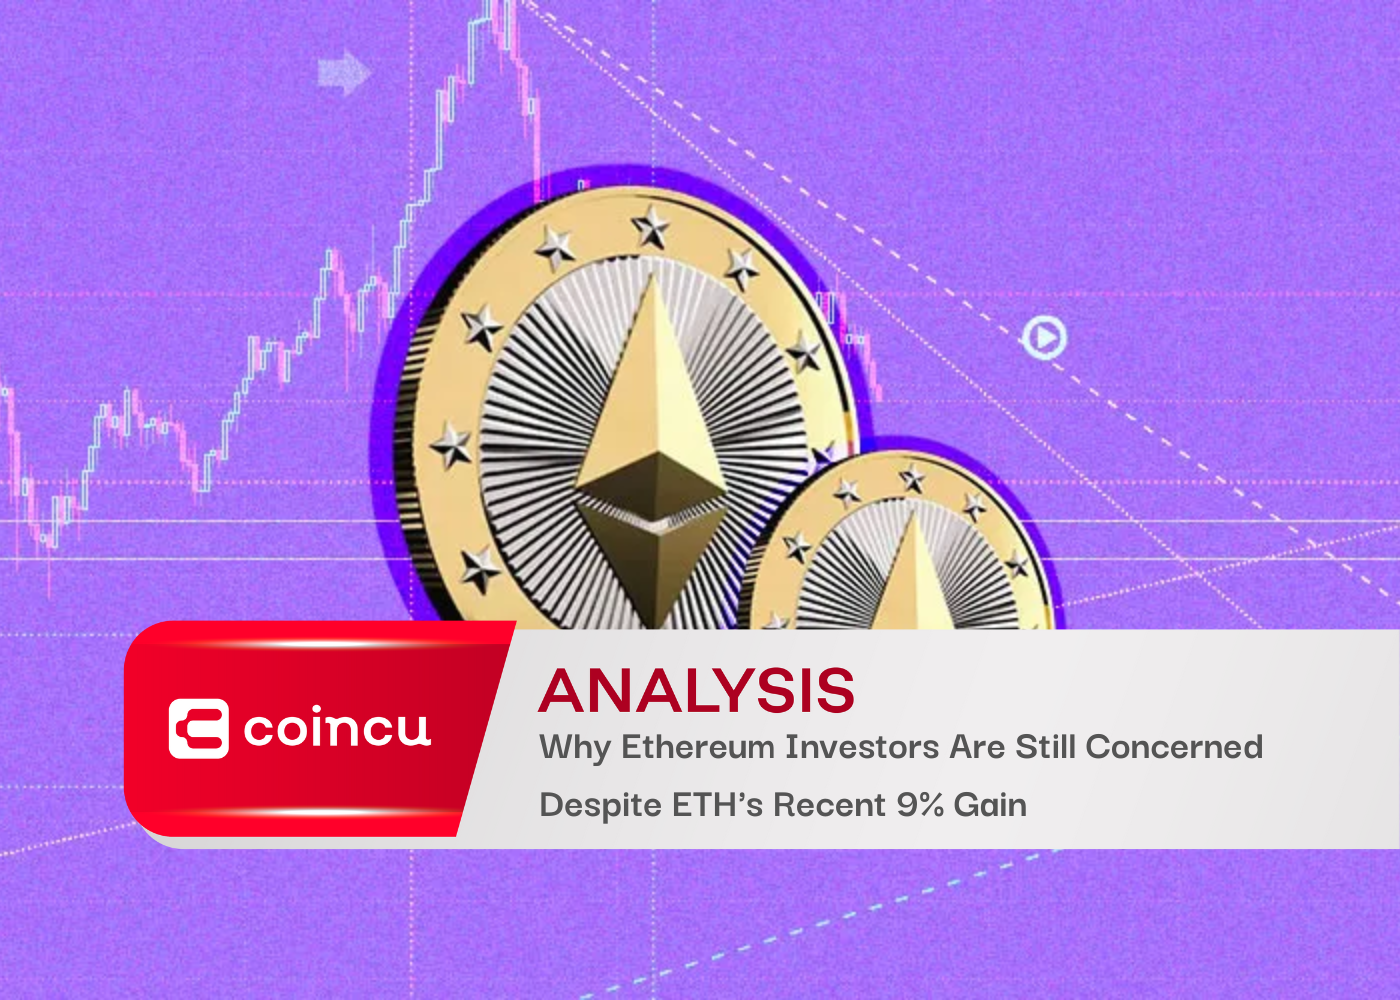 Почему инвесторы Ethereum все еще обеспокоены, несмотря на недавний прирост ETH на 9%